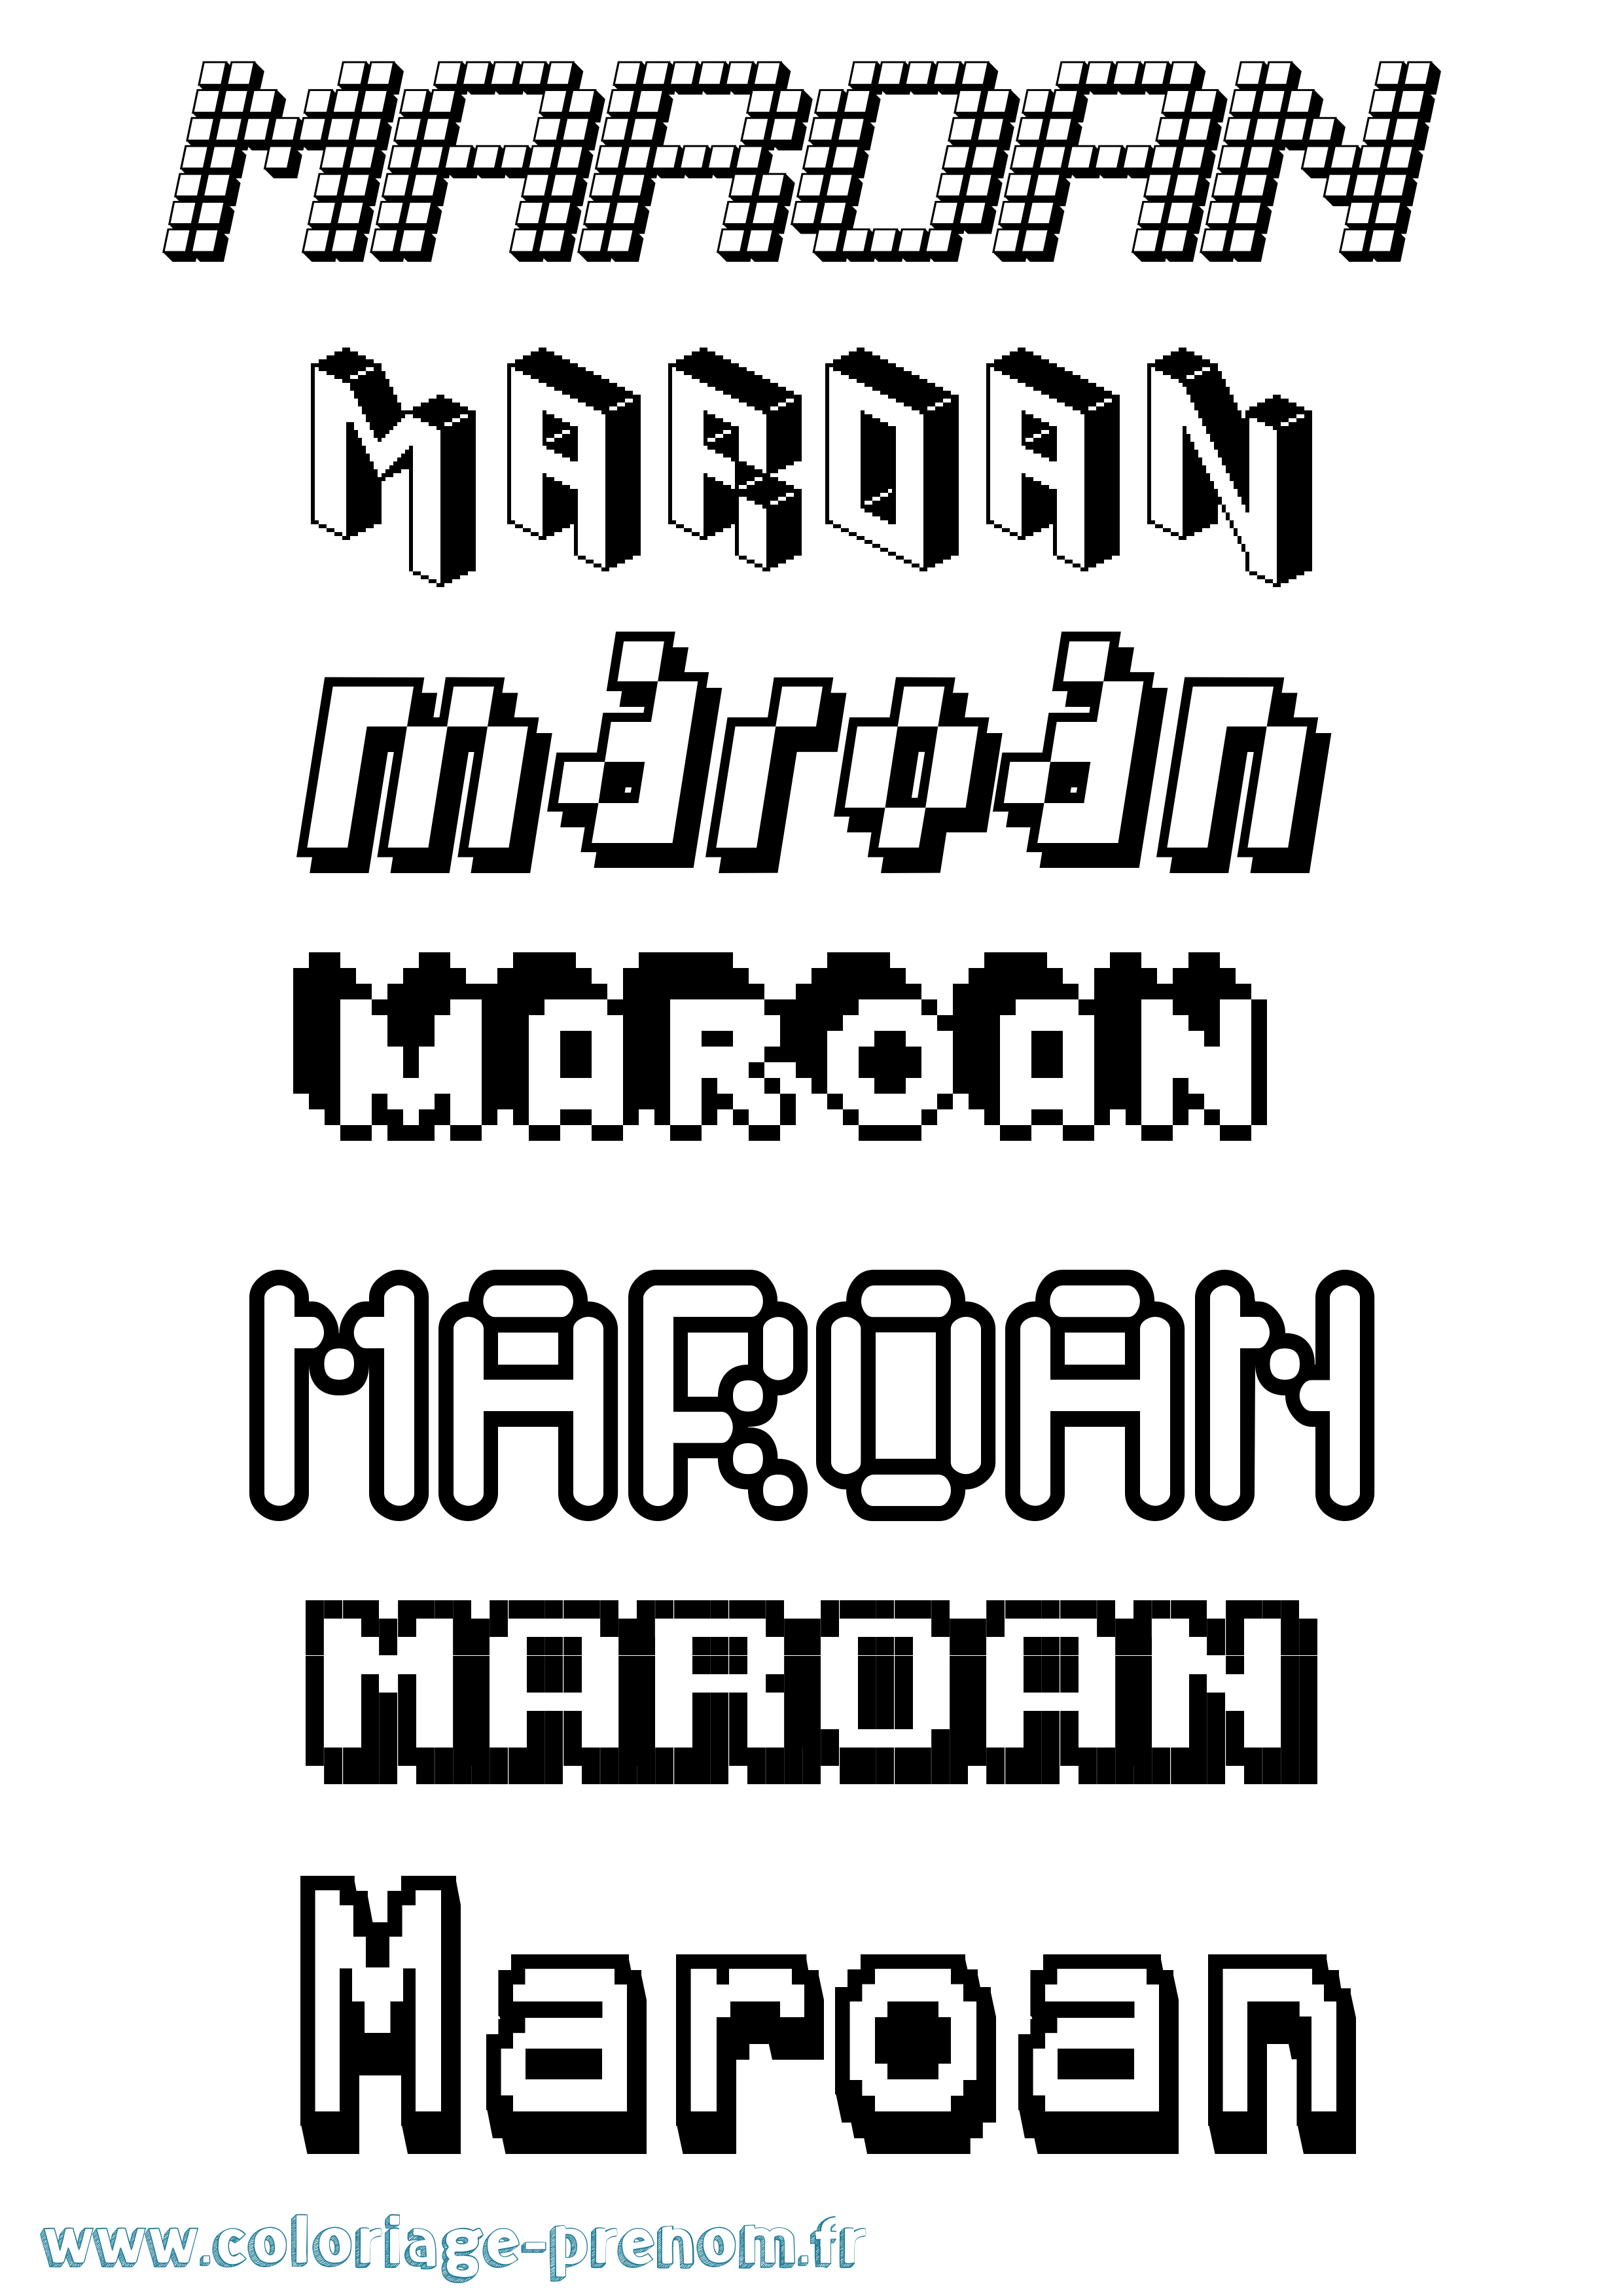 Coloriage prénom Maroan Pixel